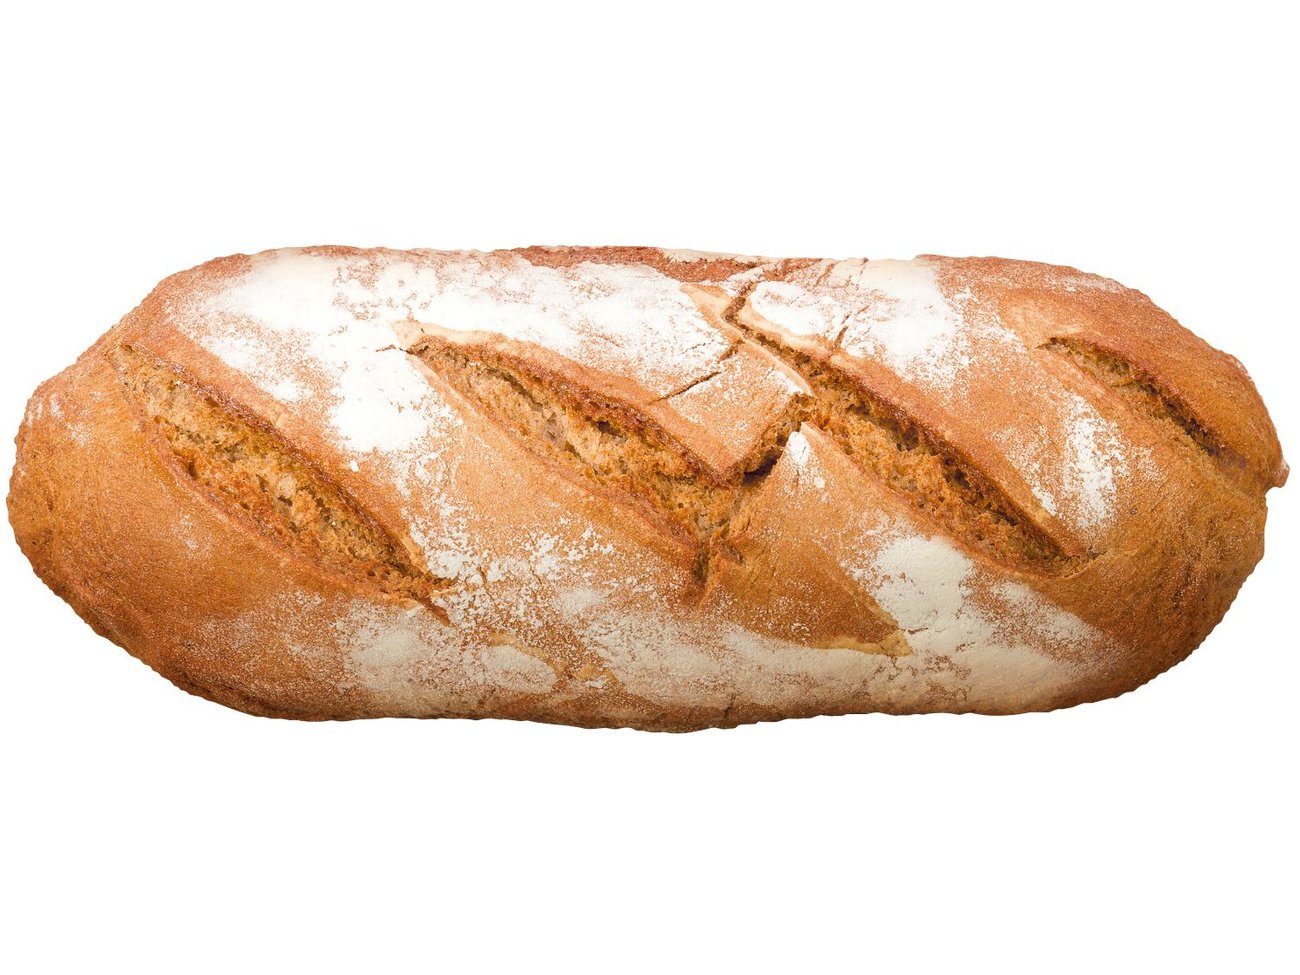 Ръжено-пшеничен хляб